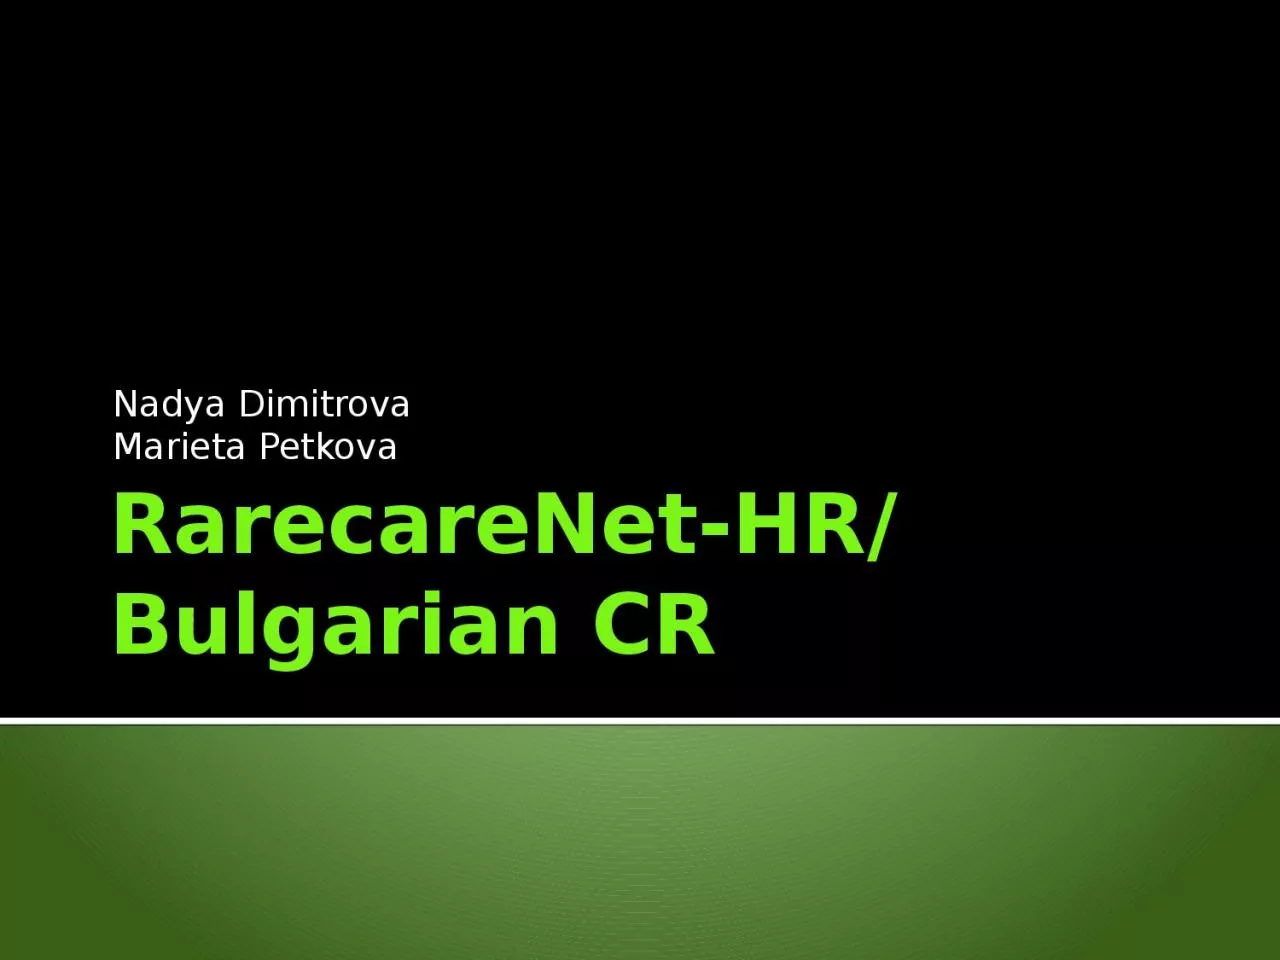 RarecareNet -HR/Bulgarian CR